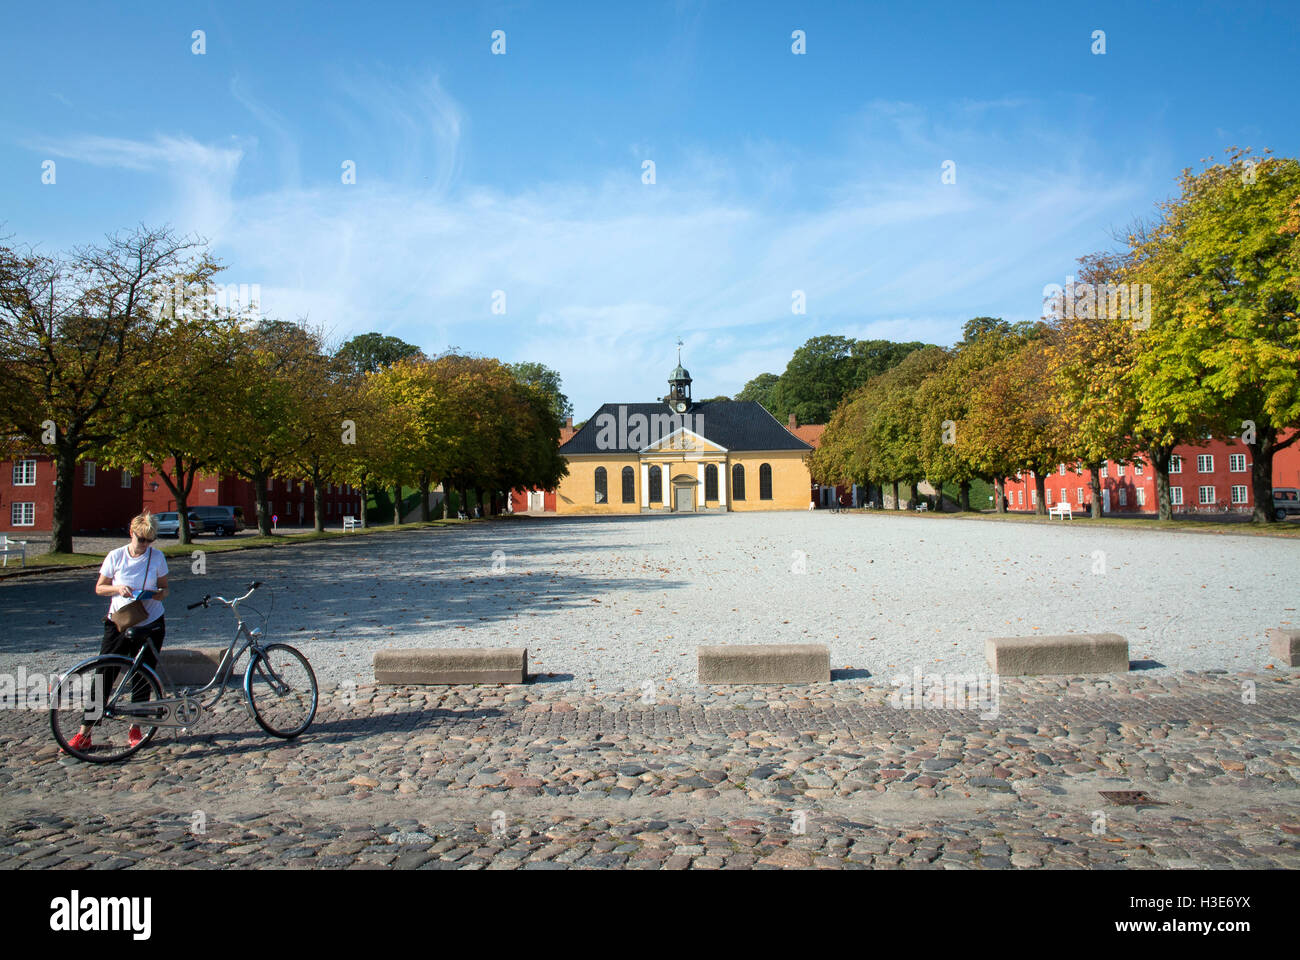 The grounds of the Kastellet in Copenhagen, Denmark. Stock Photo